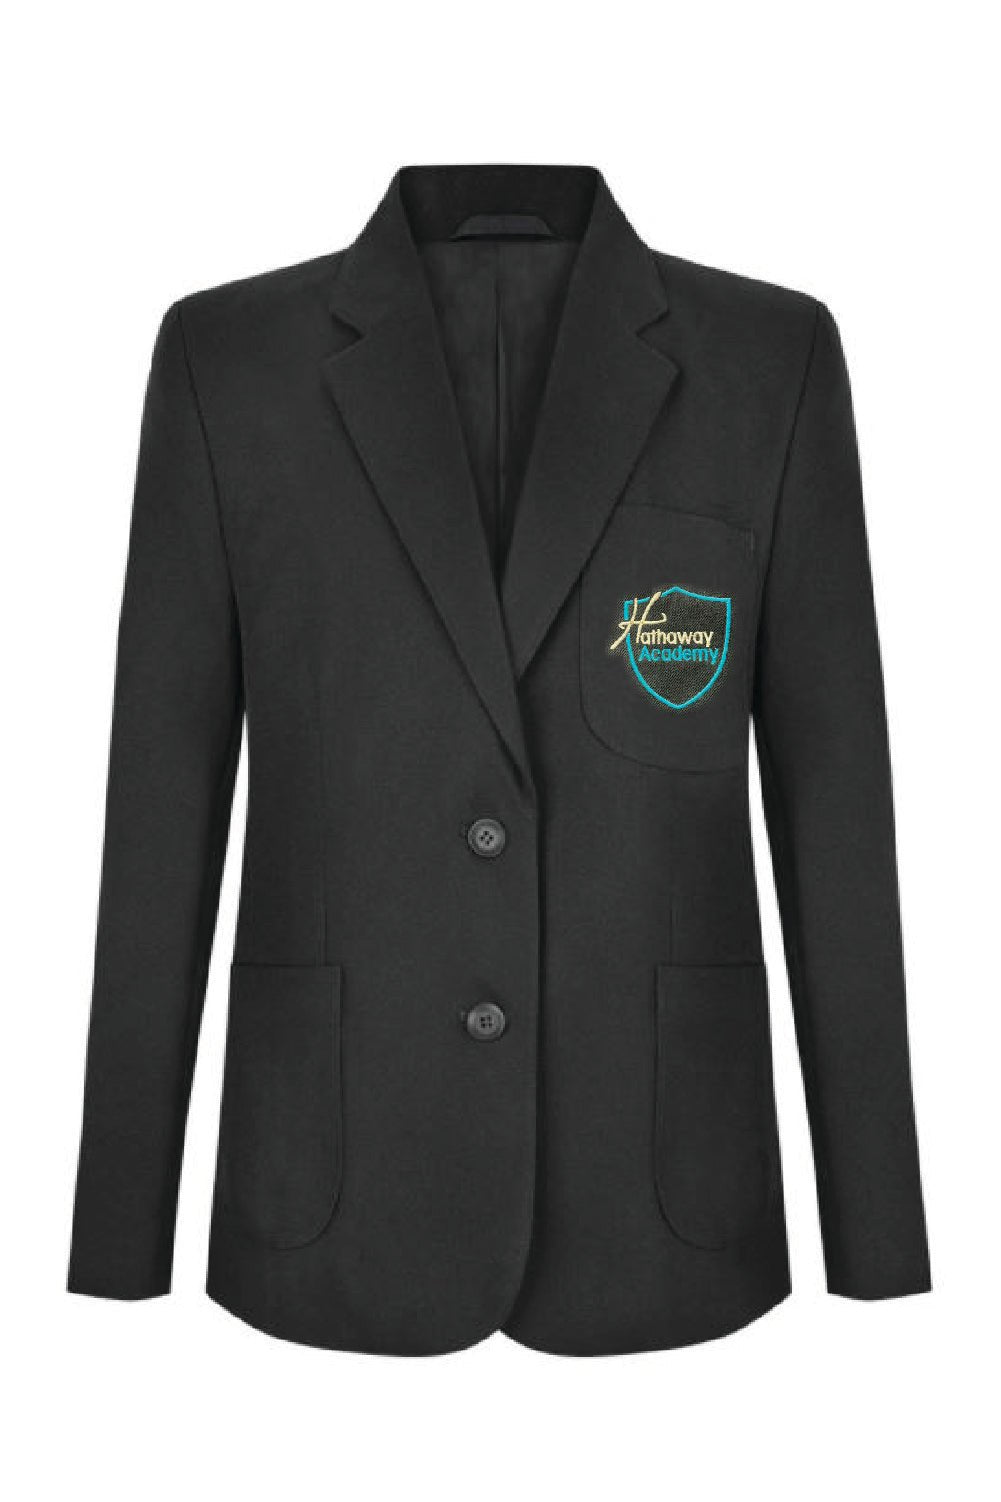 Hathaway Academy Boys School Blazer - Uniformwise Schoolwear